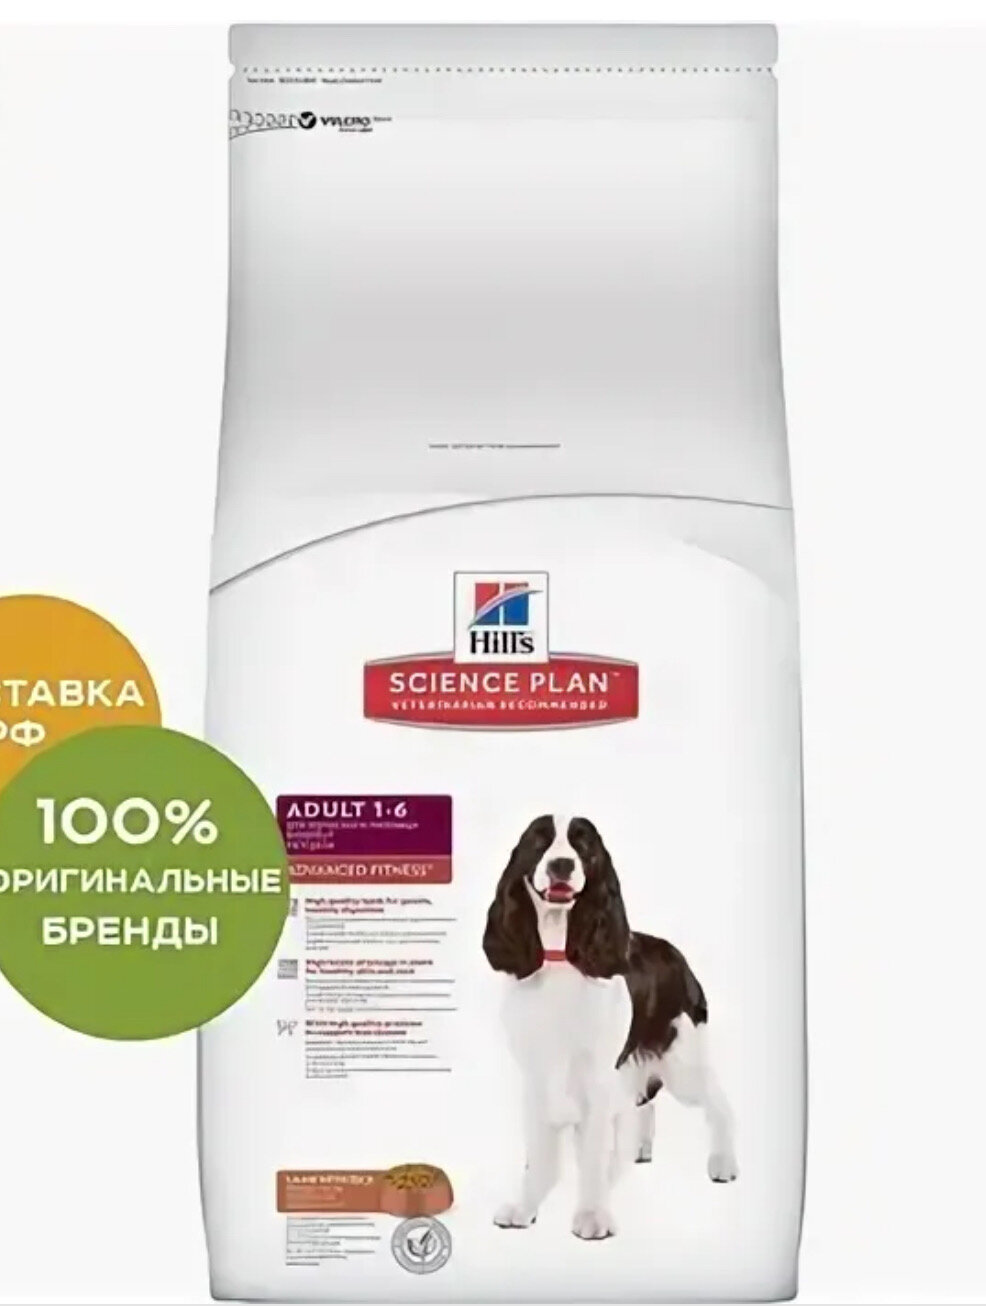 Сухой корм Hill's Science Plan для собак средних пород для поддержания активности и здоровья желудочно-кишечного тракта, с ягненком и рисом, 18 кг